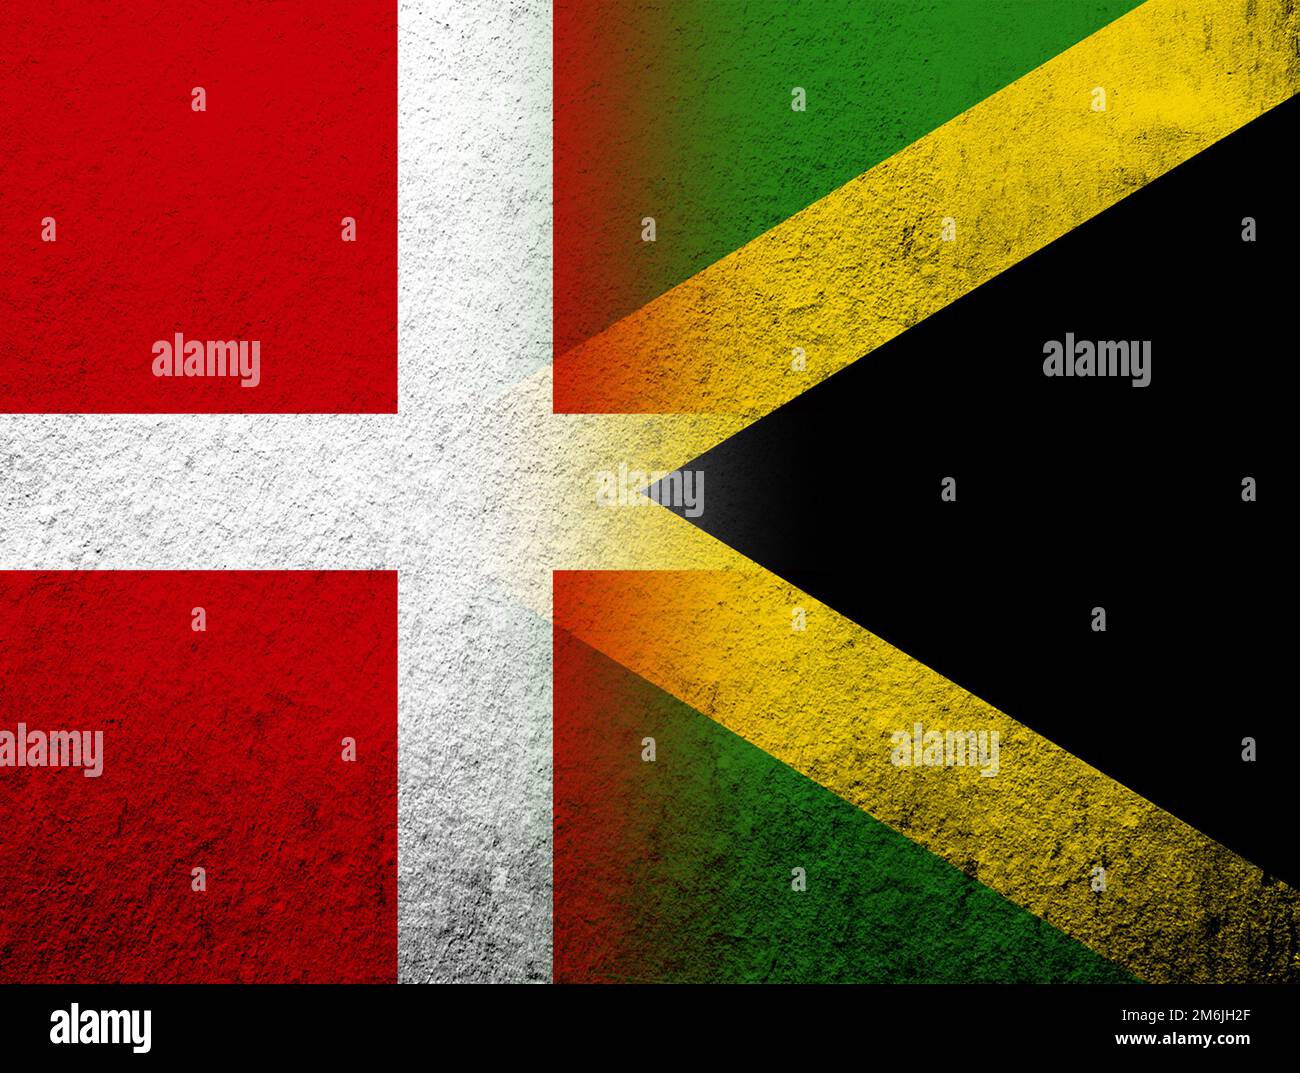 Le Royaume du Danemark drapeau national avec drapeau national de la Jamaïque. Grunge l'arrière-plan Banque D'Images